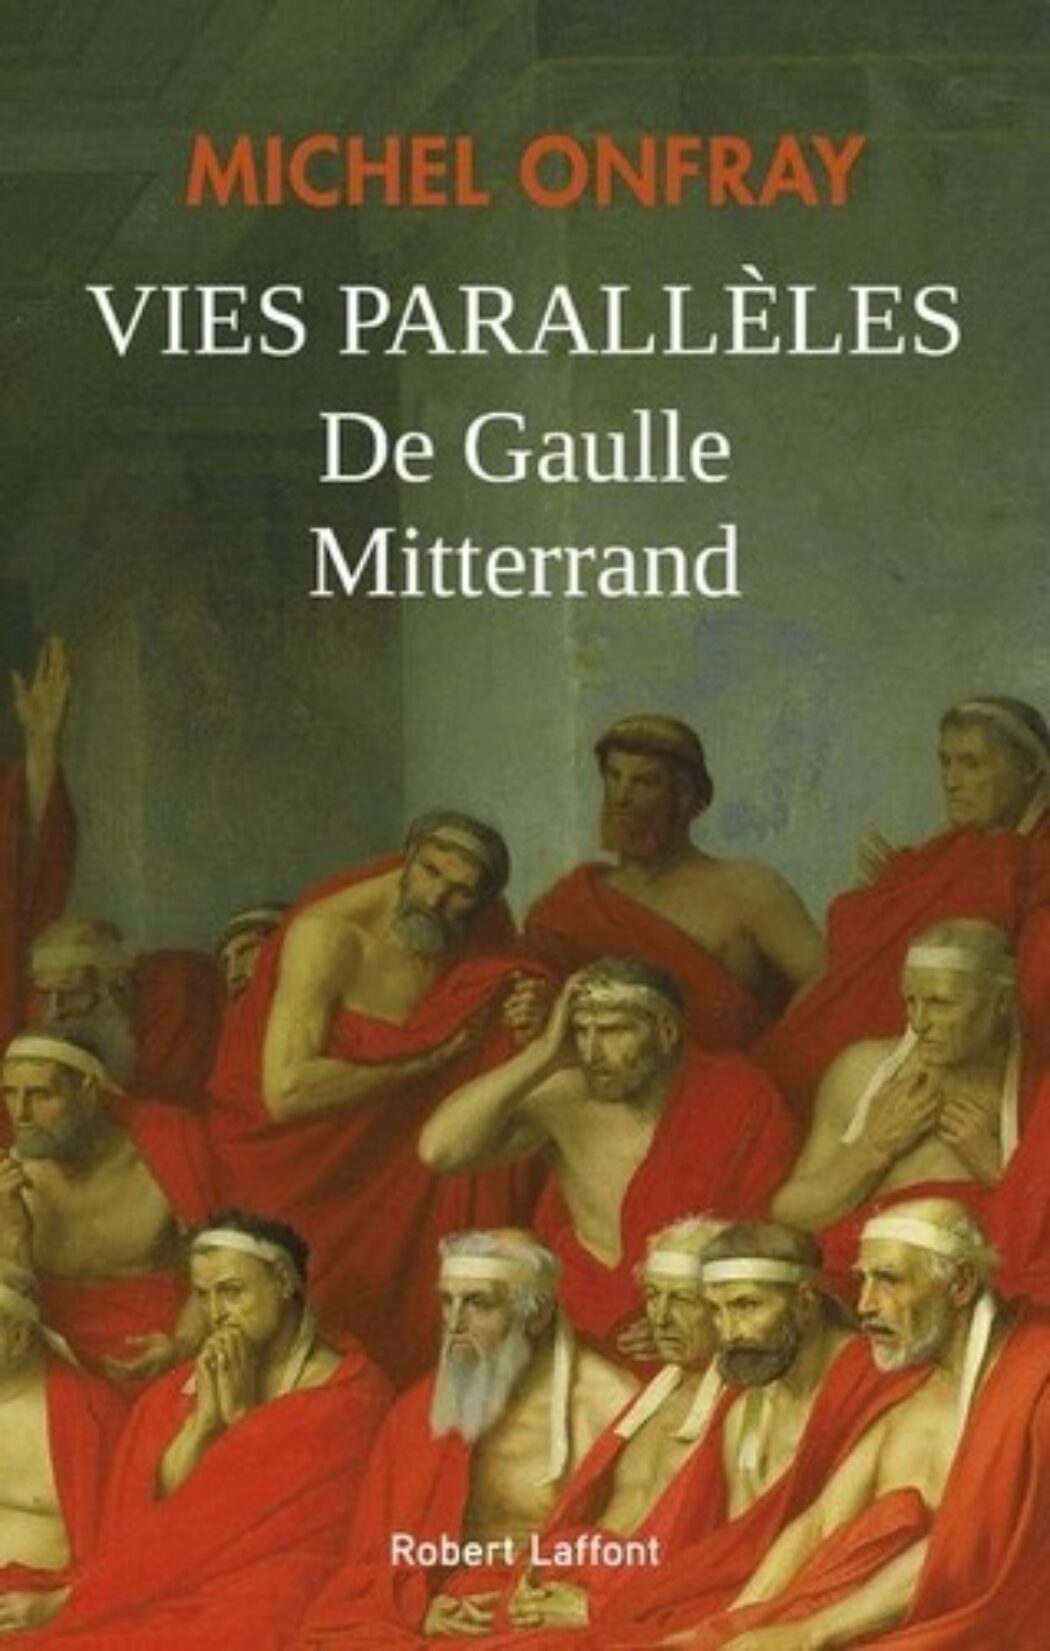 De Michel Onfray, un rappel sur François Mitterrand qui écoeure